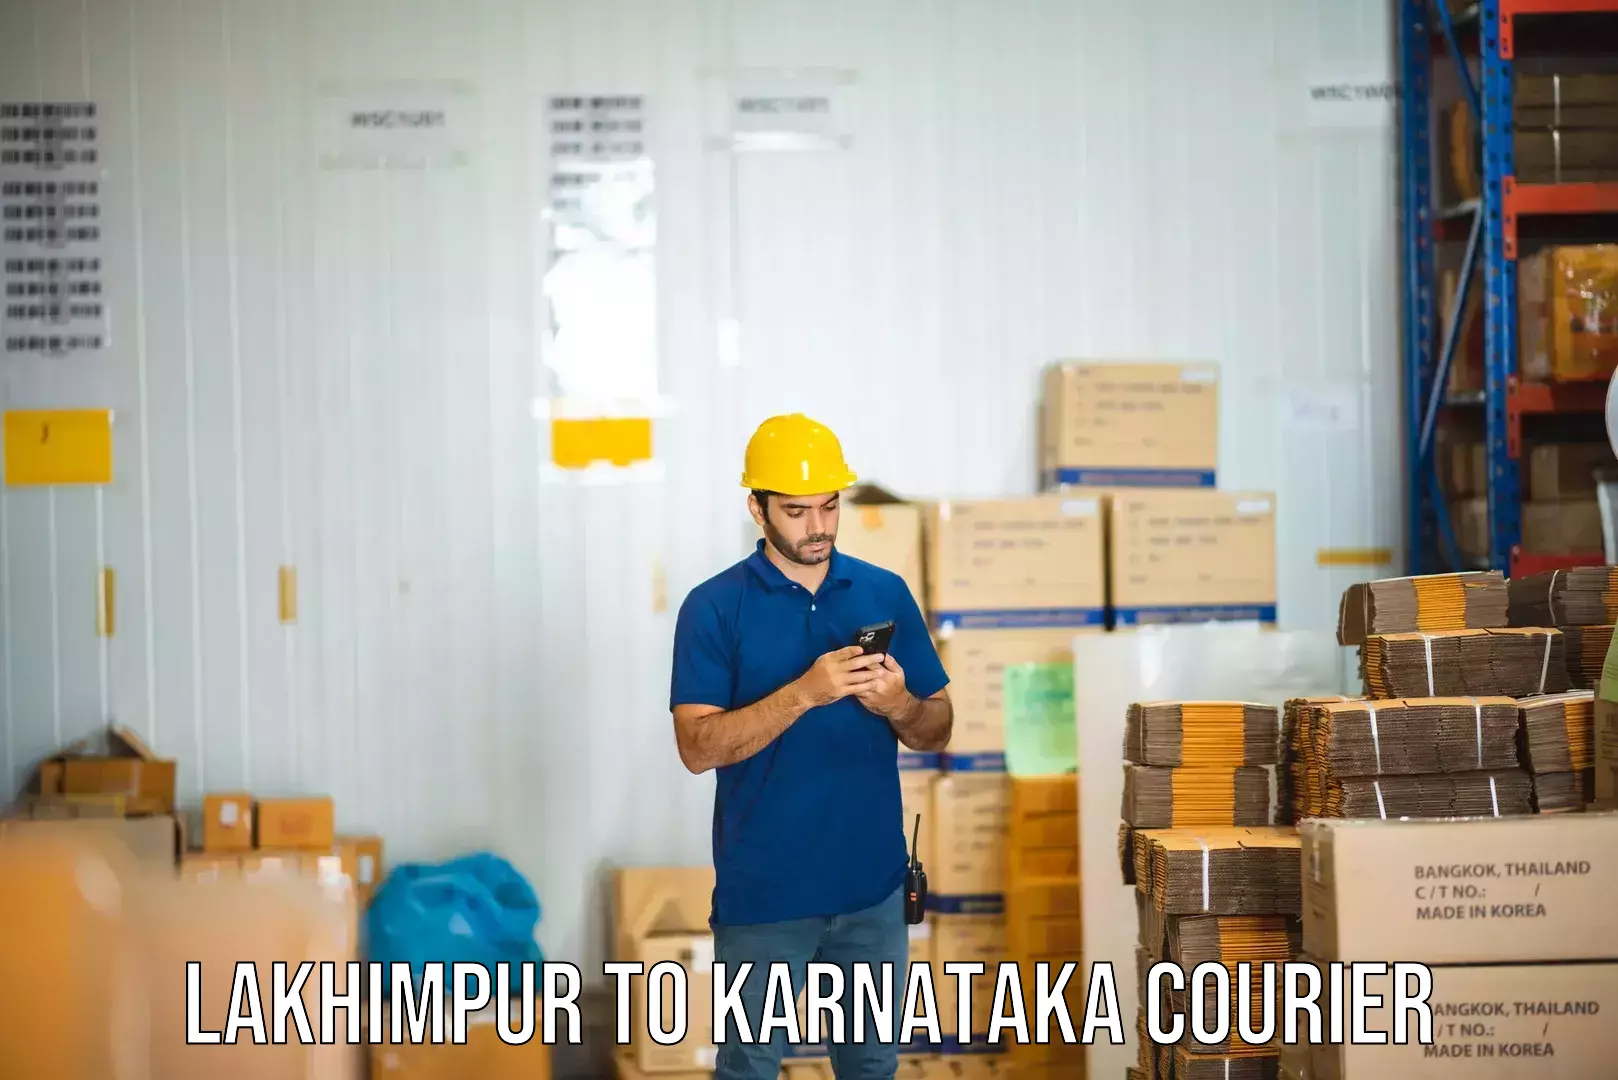 Regular parcel service Lakhimpur to Karnataka